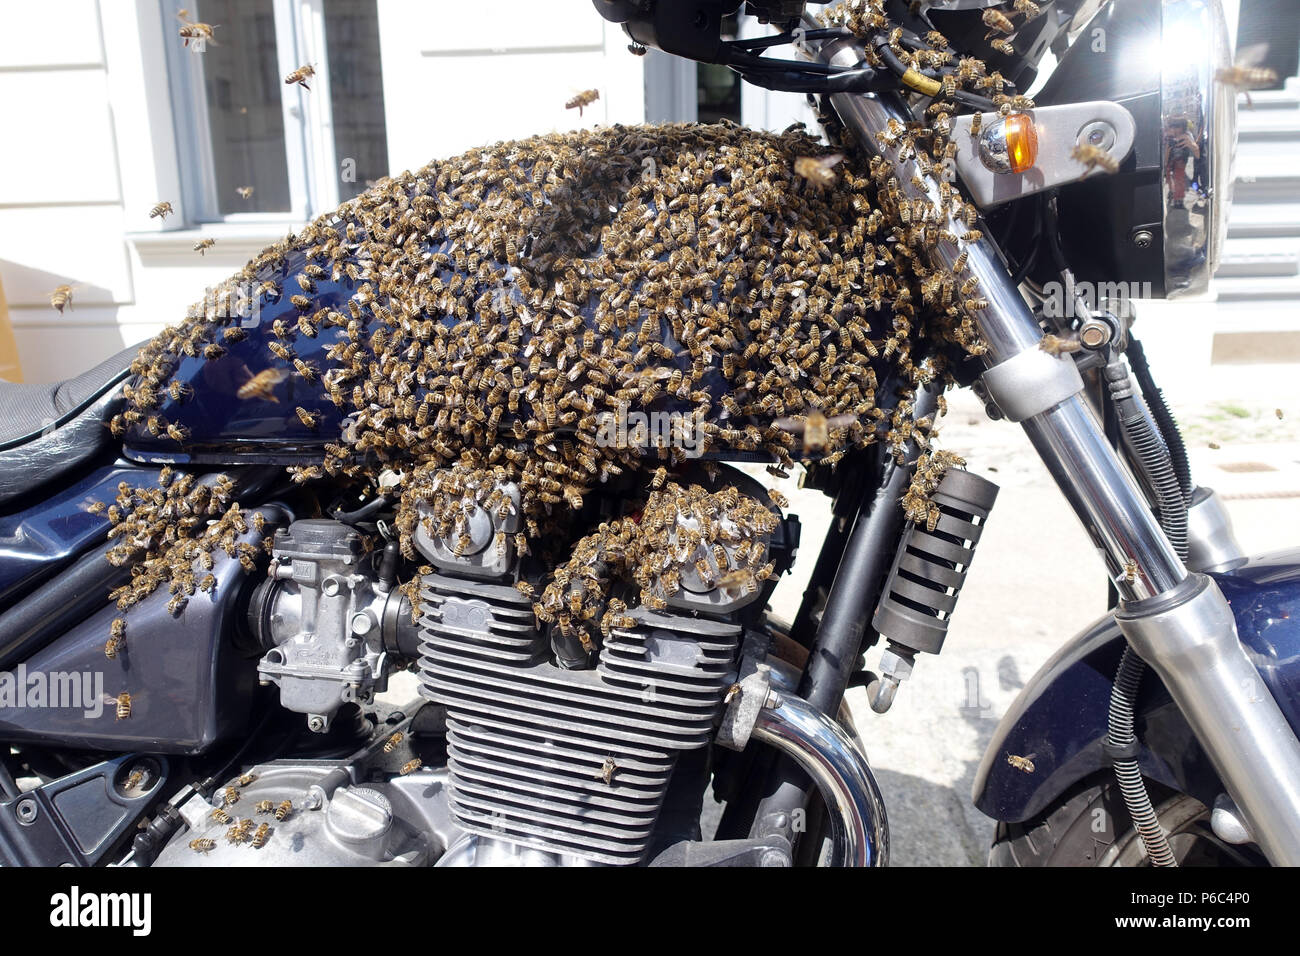 Berlin Kreuzberg, ein Schwarm von Bienen saß auf einem Motorrad und wird erfasst Stockfoto